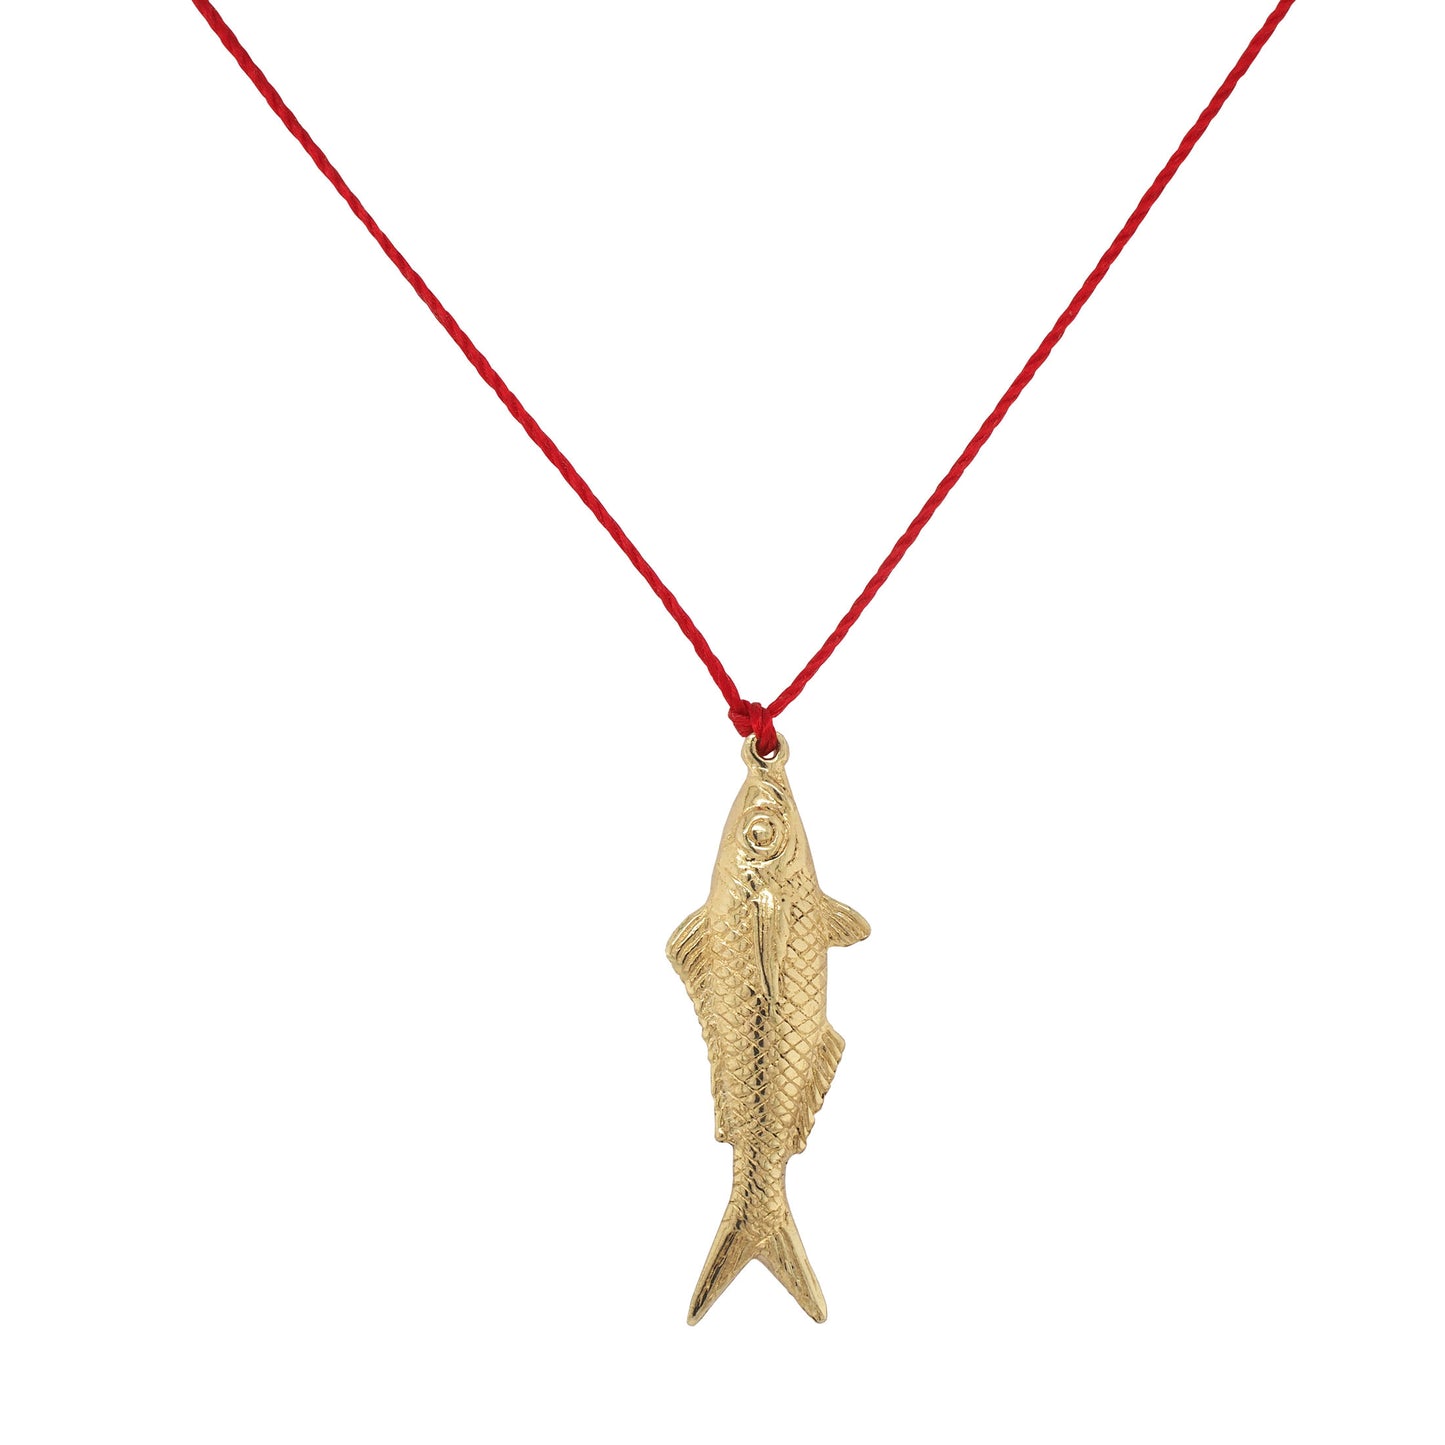 Noosa River Fish Necklace